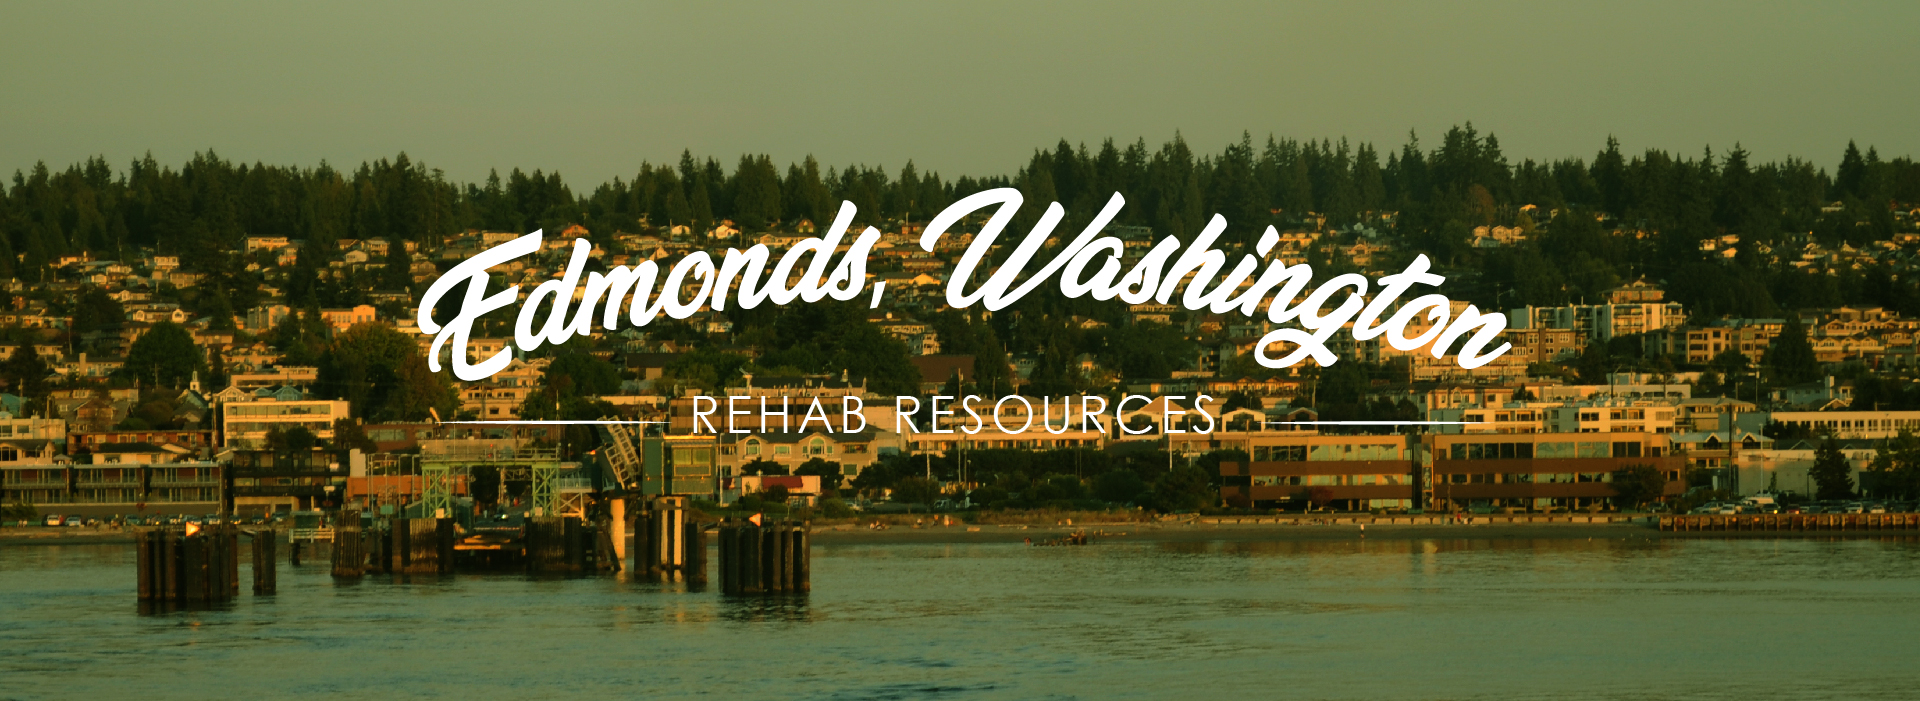 Edmonds, Washington addiction resources